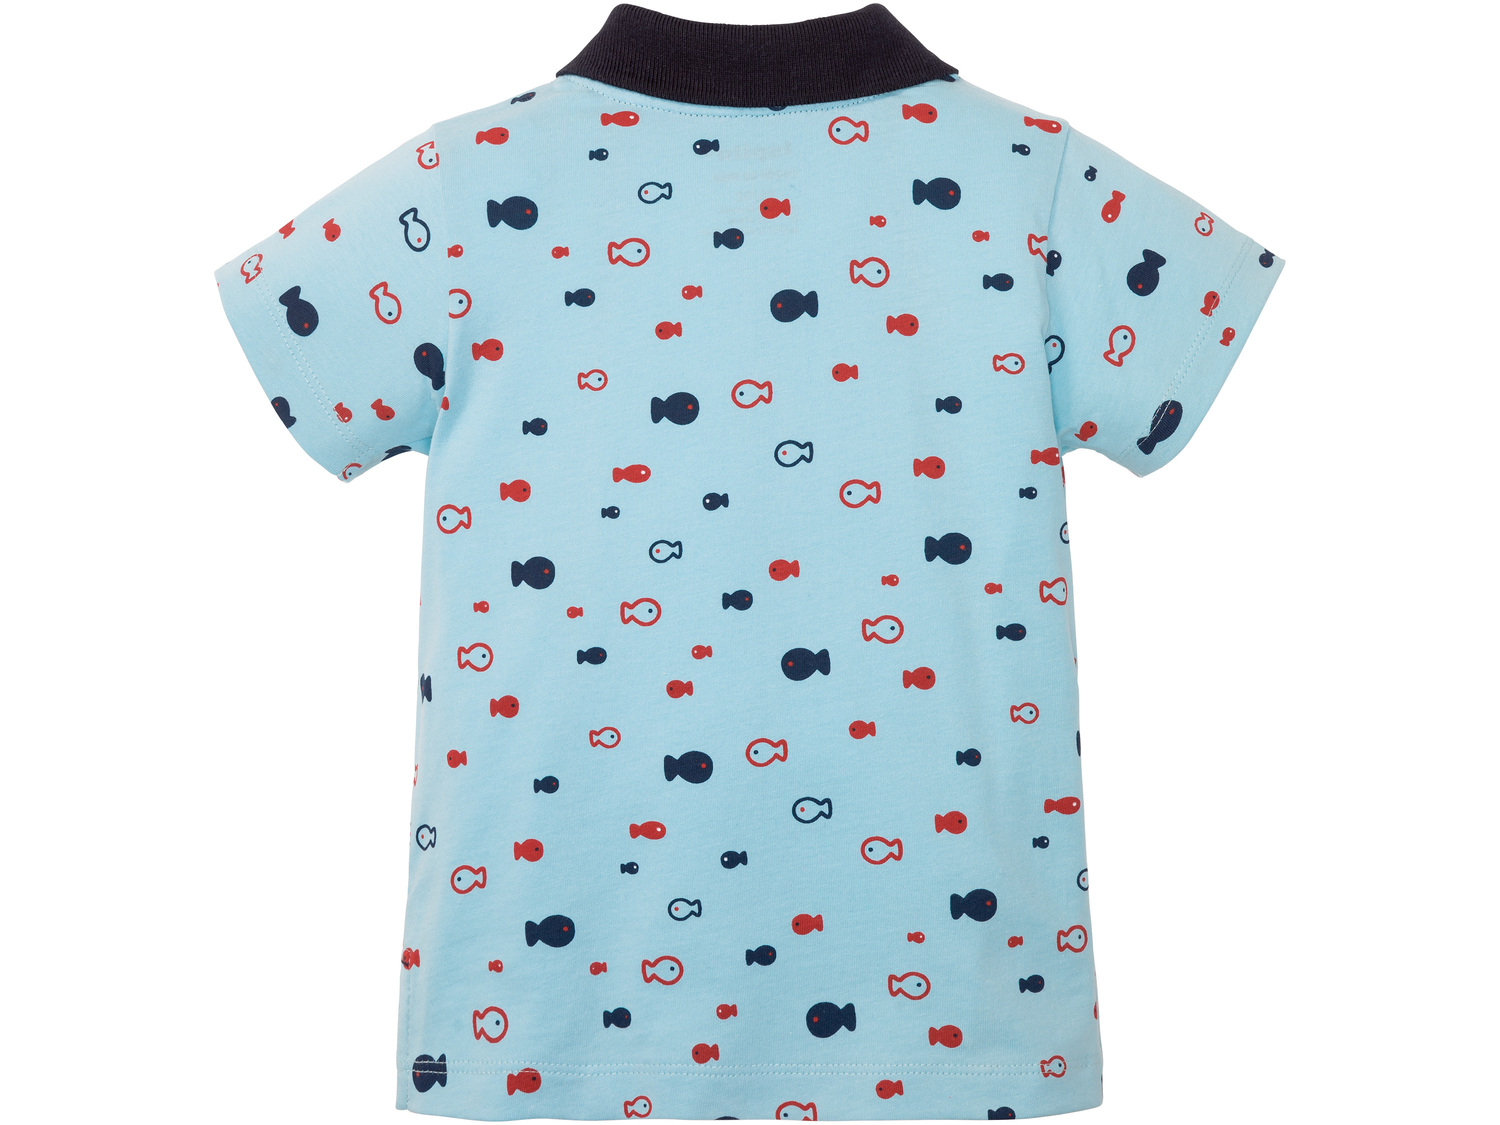 Koszulka chłopięca polo Lupilu, cena 12,99 PLN 
- rozmiary: 62-92
- 100% bawełny
Dostępne ...